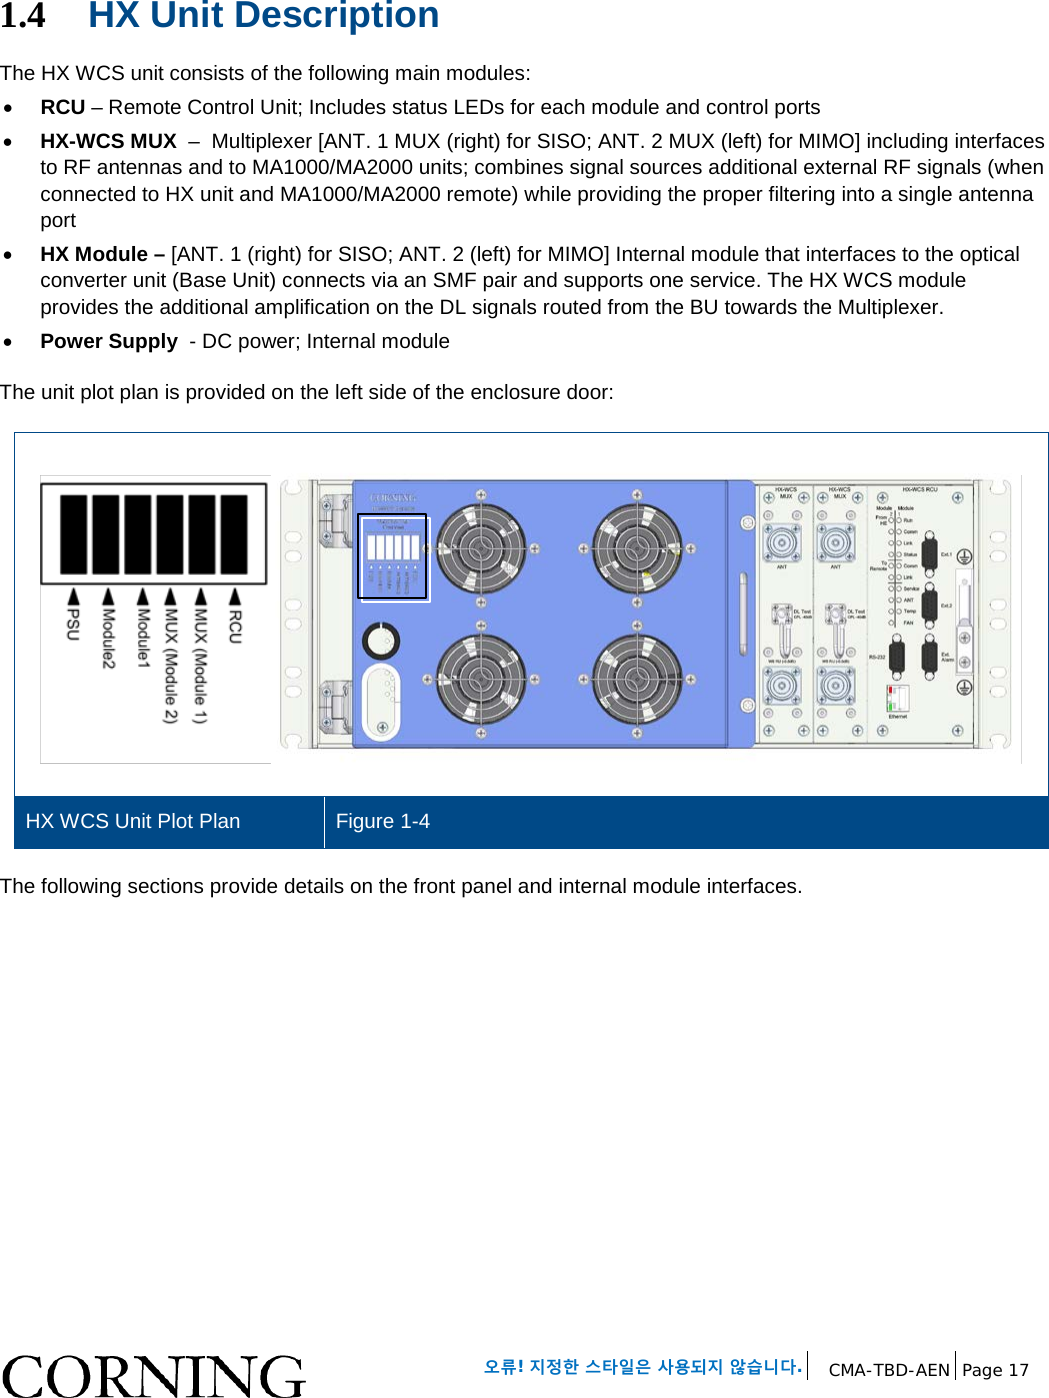   오류! 지정한 스타일은 사용되지 않습니다. CMA-TBD-AEN Page 17   1.4 HX Unit Description The HX WCS unit consists of the following main modules: • RCU – Remote Control Unit; Includes status LEDs for each module and control ports • HX-WCS MUX  –  Multiplexer [ANT. 1 MUX (right) for SISO; ANT. 2 MUX (left) for MIMO] including interfaces to RF antennas and to MA1000/MA2000 units; combines signal sources additional external RF signals (when connected to HX unit and MA1000/MA2000 remote) while providing the proper filtering into a single antenna port • HX Module – [ANT. 1 (right) for SISO; ANT. 2 (left) for MIMO] Internal module that interfaces to the optical converter unit (Base Unit) connects via an SMF pair and supports one service. The HX WCS module provides the additional amplification on the DL signals routed from the BU towards the Multiplexer. • Power Supply  - DC power; Internal module The unit plot plan is provided on the left side of the enclosure door:   HX WCS Unit Plot Plan Figure 1-4 The following sections provide details on the front panel and internal module interfaces.    